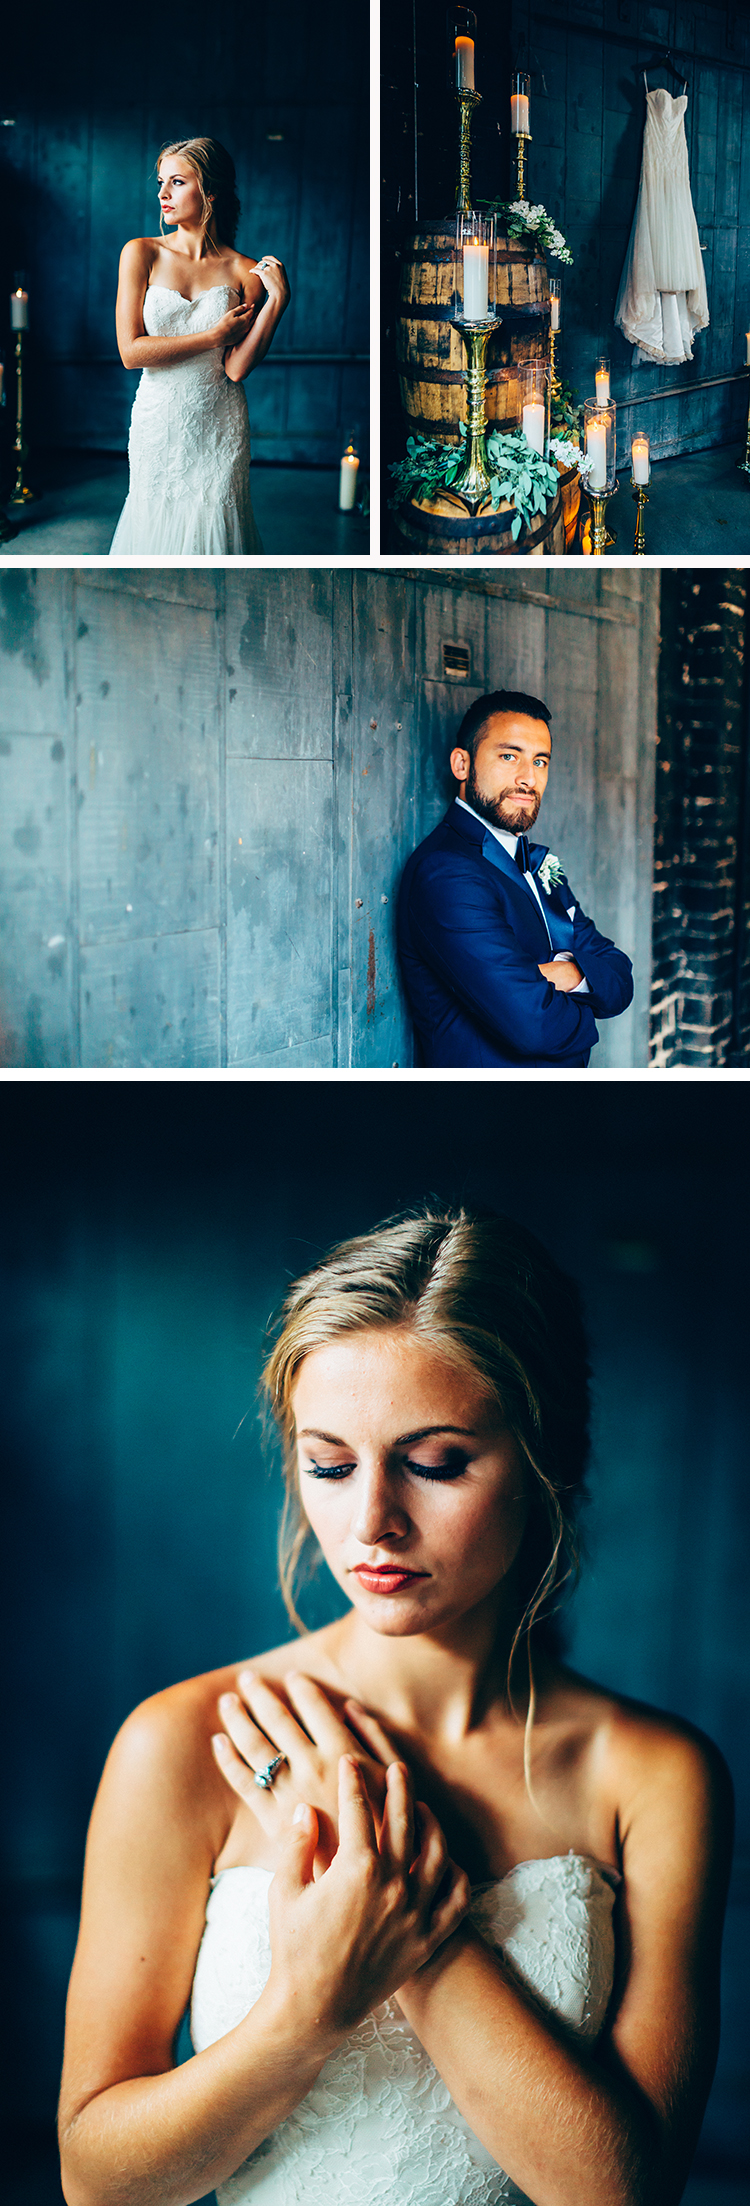 thème mariage 2018- cérémonie de style royal en bleu profond